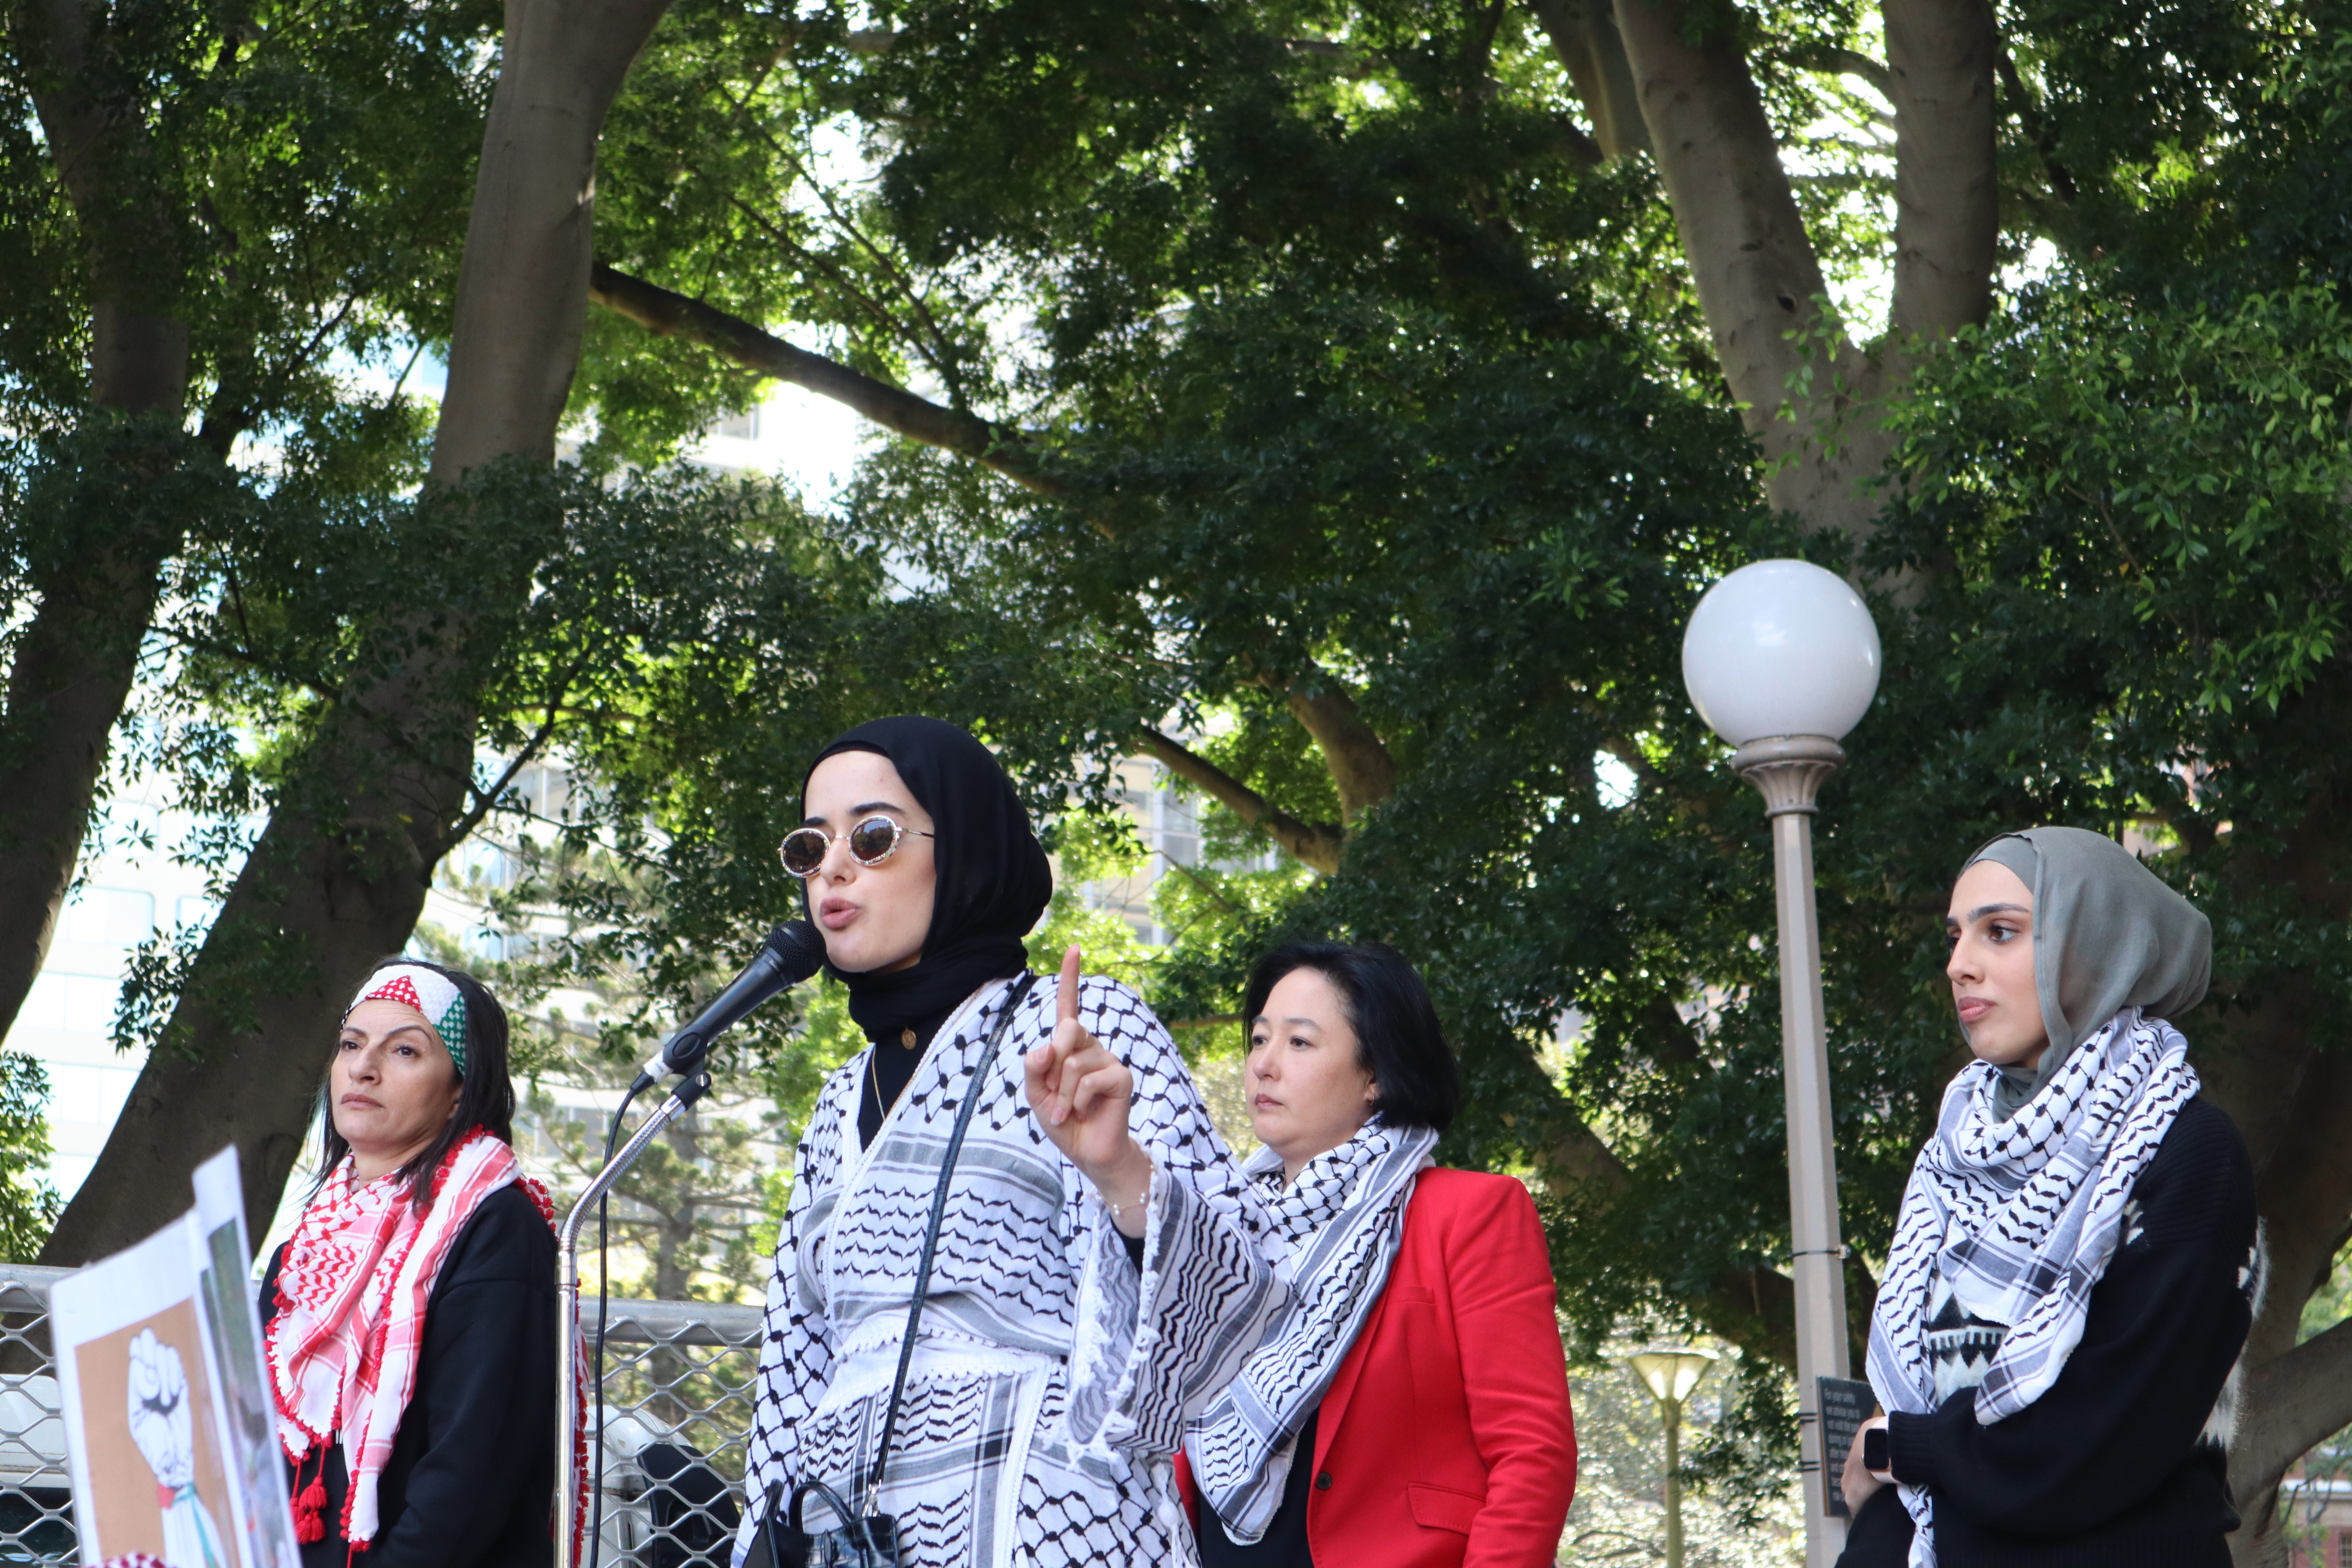 Palestine Action Group Sydney spokesperson Assala Sayara addresses the Hyde Park rally